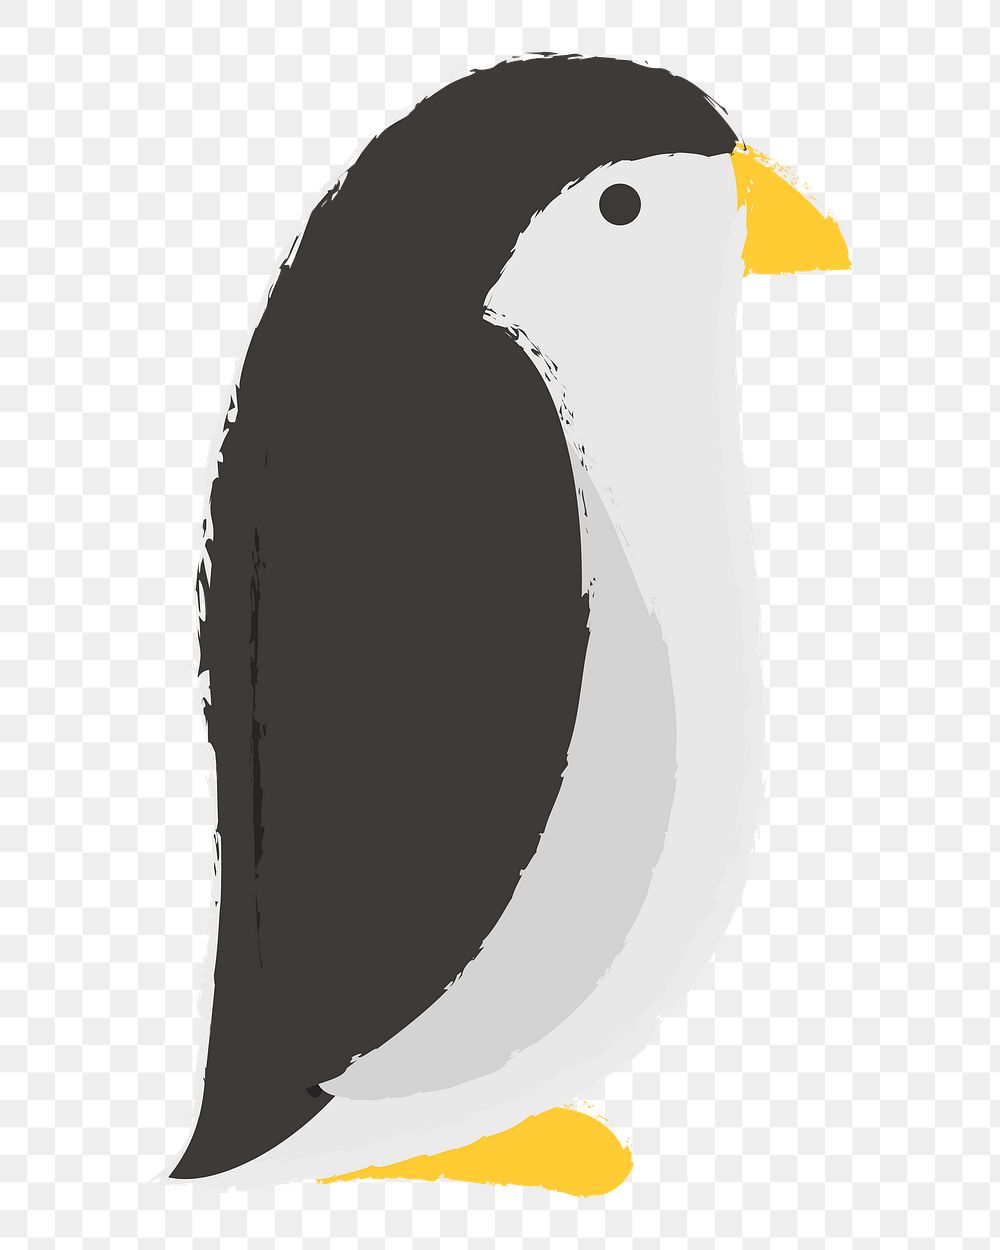 Penguin png illustration, transparent background